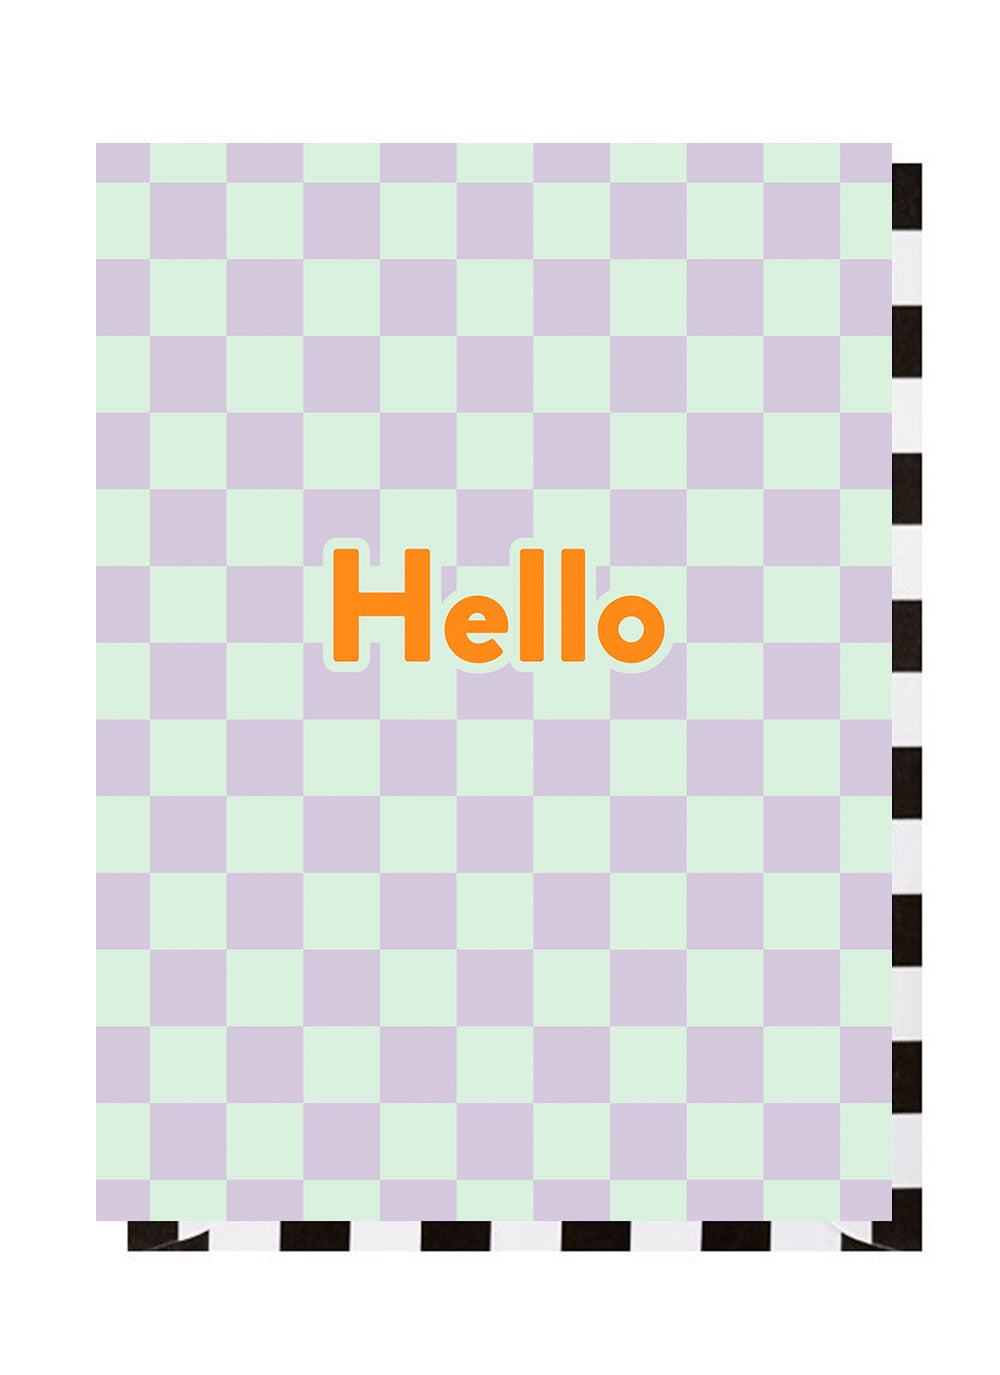 Hello Checkerboard Card